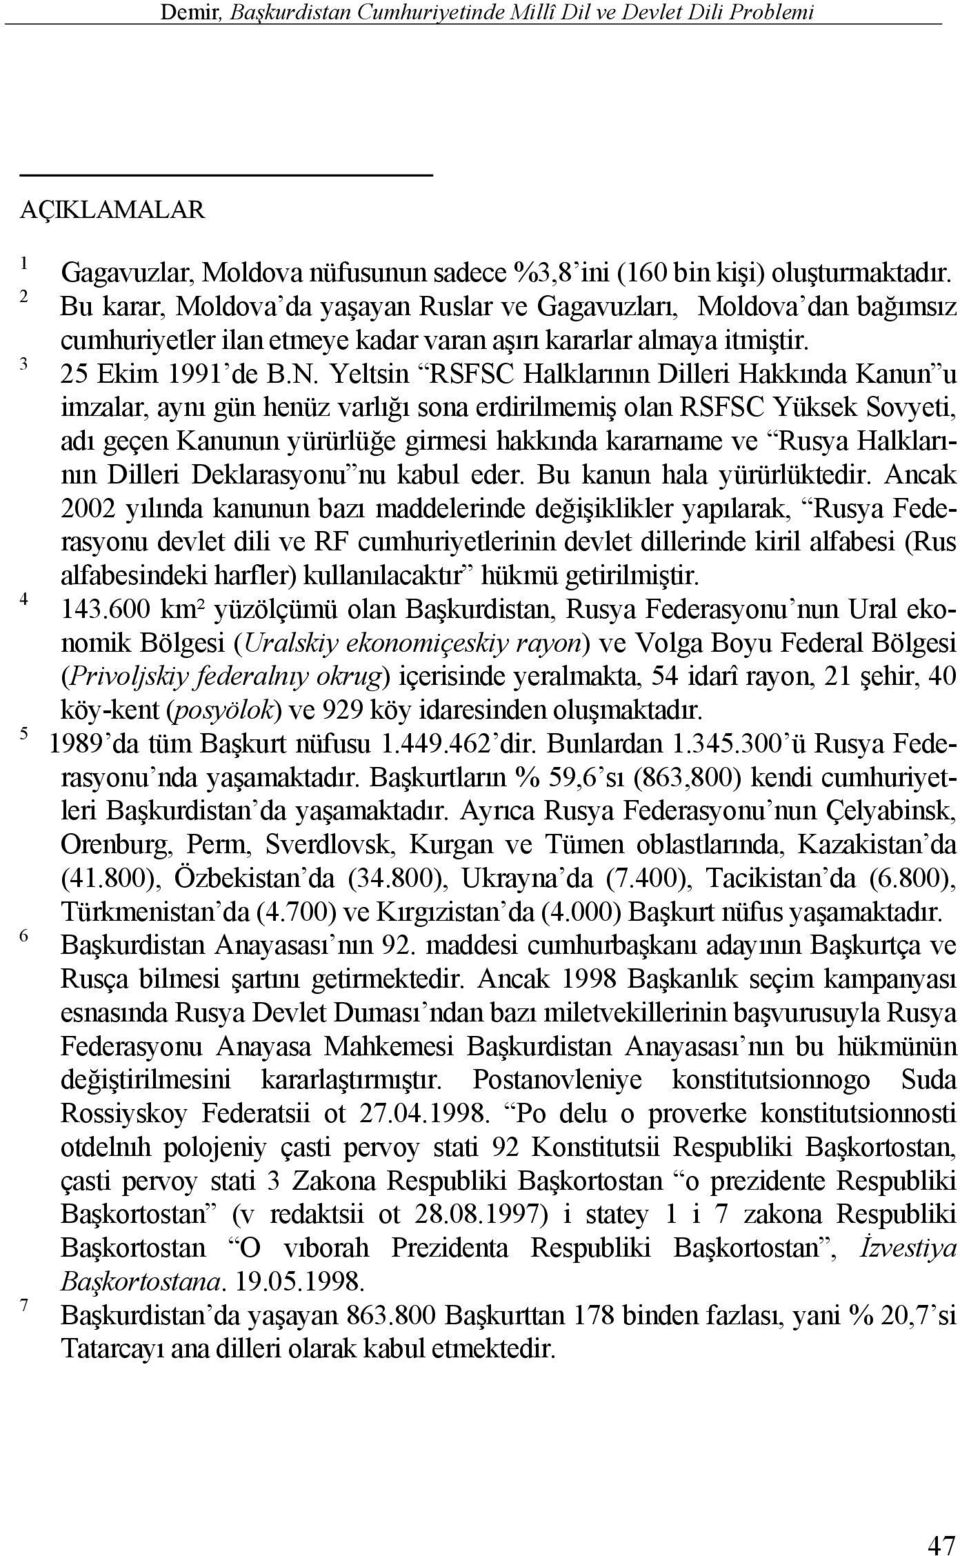 Yeltsin RSFSC Halklarının Dilleri Hakkında Kanun u imzalar, aynı gün henüz varlığı sona erdirilmemiş olan RSFSC Yüksek Sovyeti, adı geçen Kanunun yürürlüğe girmesi hakkında kararname ve Rusya